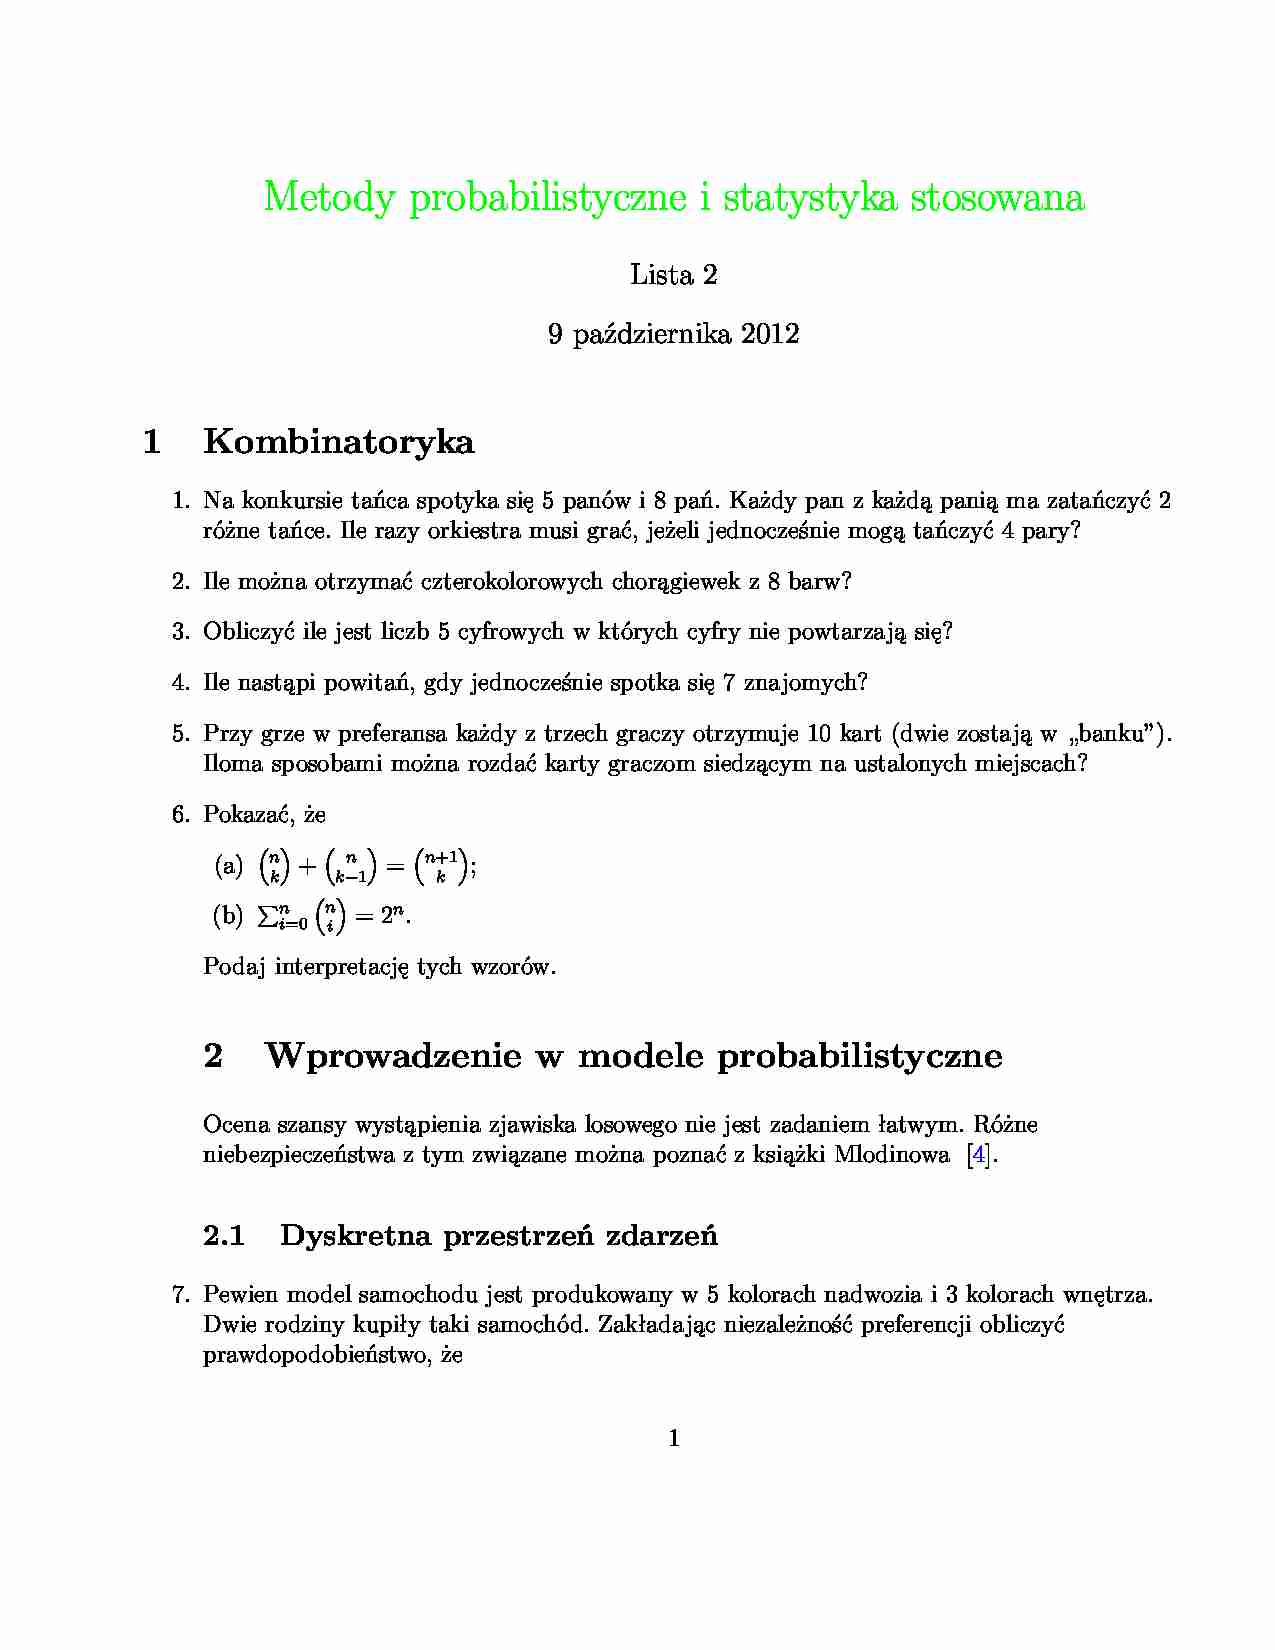 Metody probabilistyczne i statystyka stosowana-zadania - strona 1